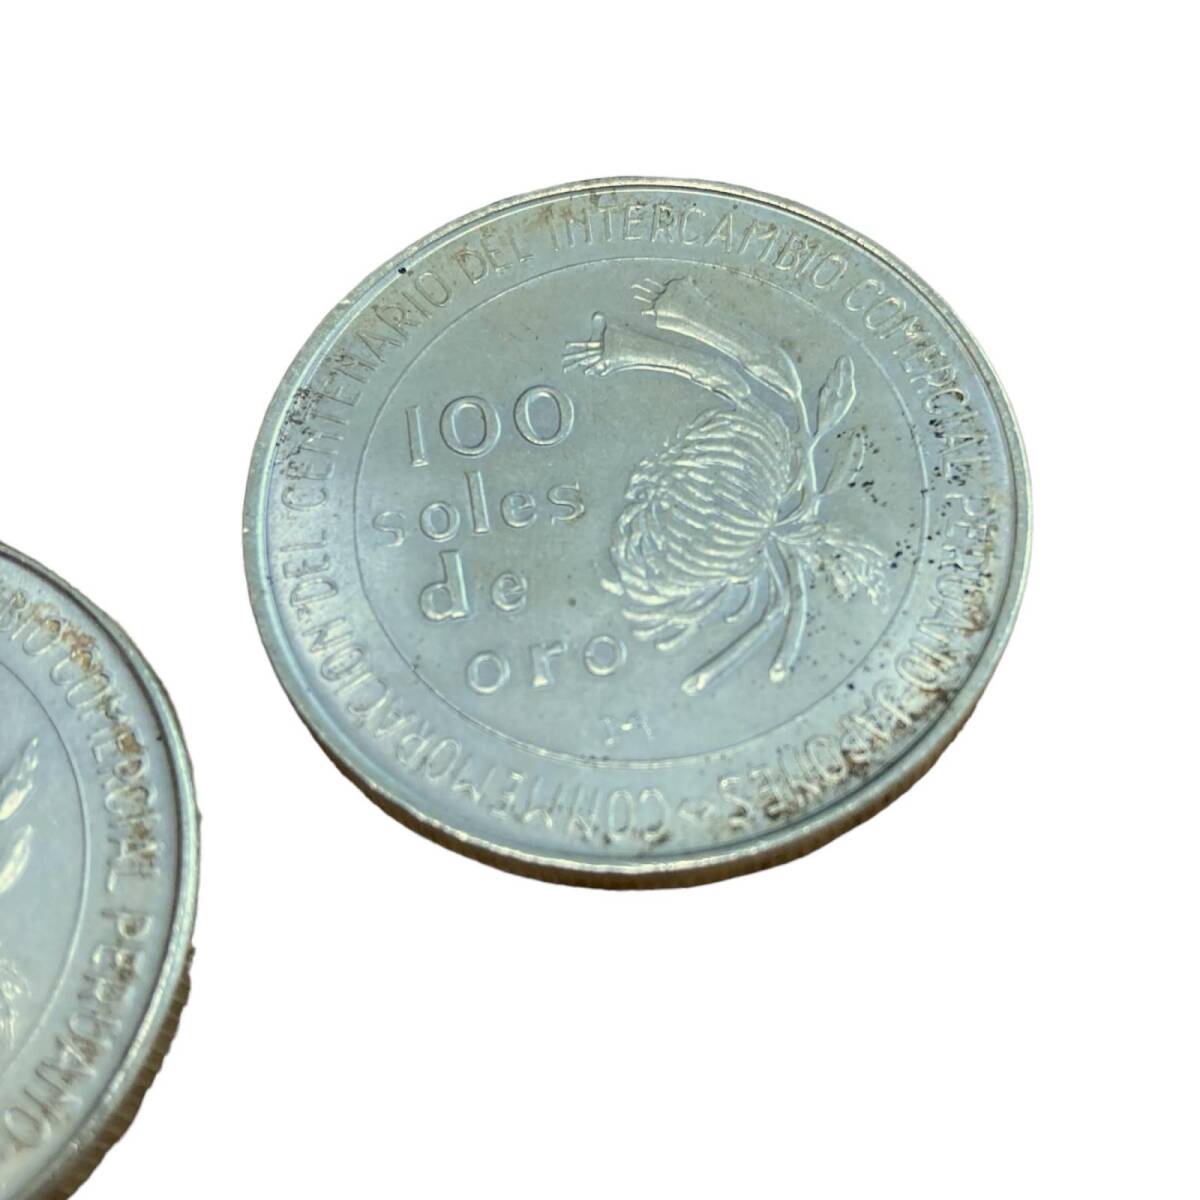 日本ペルー修好100周年記念銀貨 100ソル ペルー銀貨 1873-1973 【2枚】 コイン_画像3